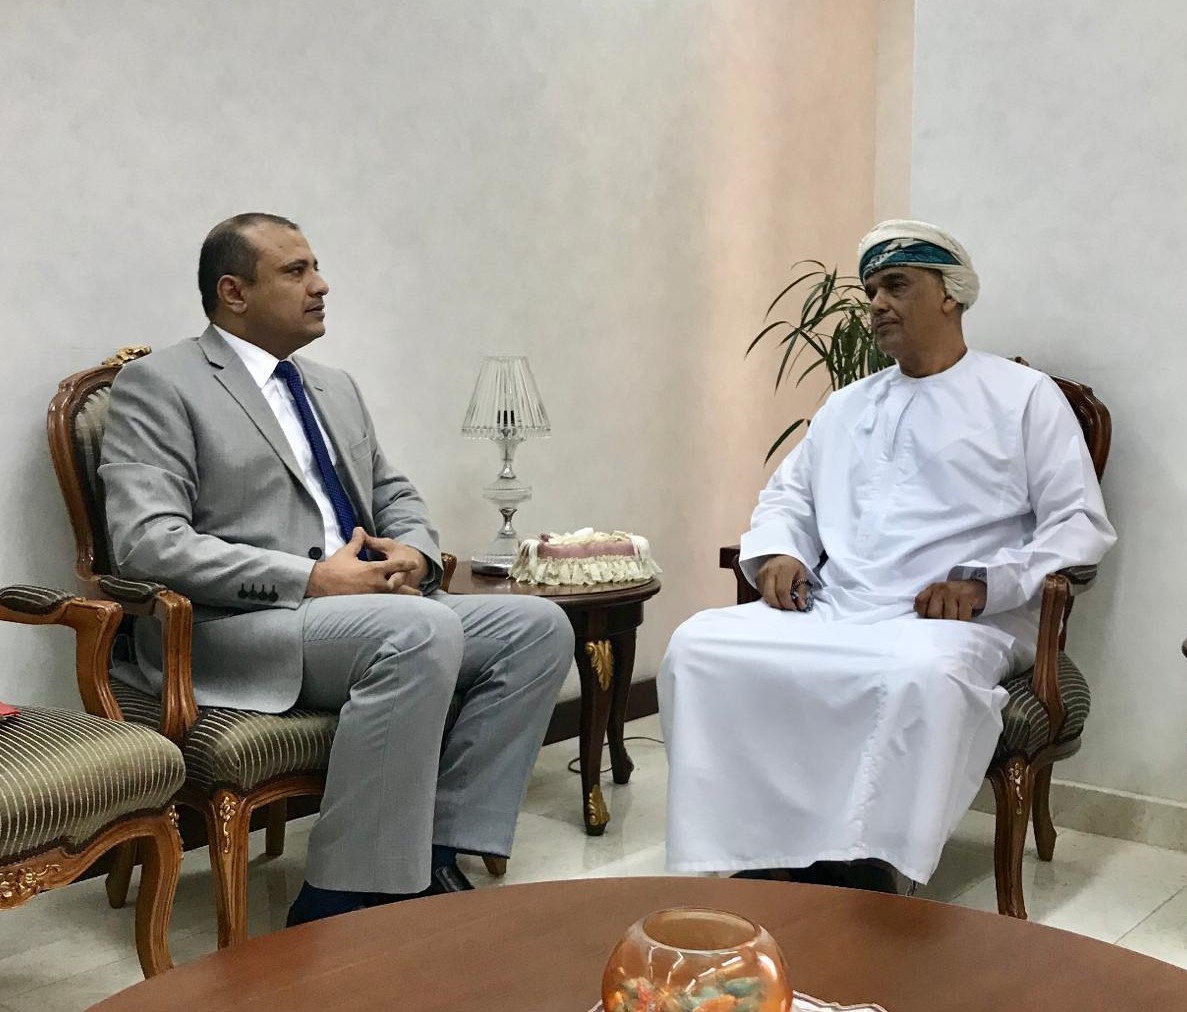 السفير شطيف يؤكد حرص الحكومة اليمنية على إحلال السلام المرتكز على المرجعيات